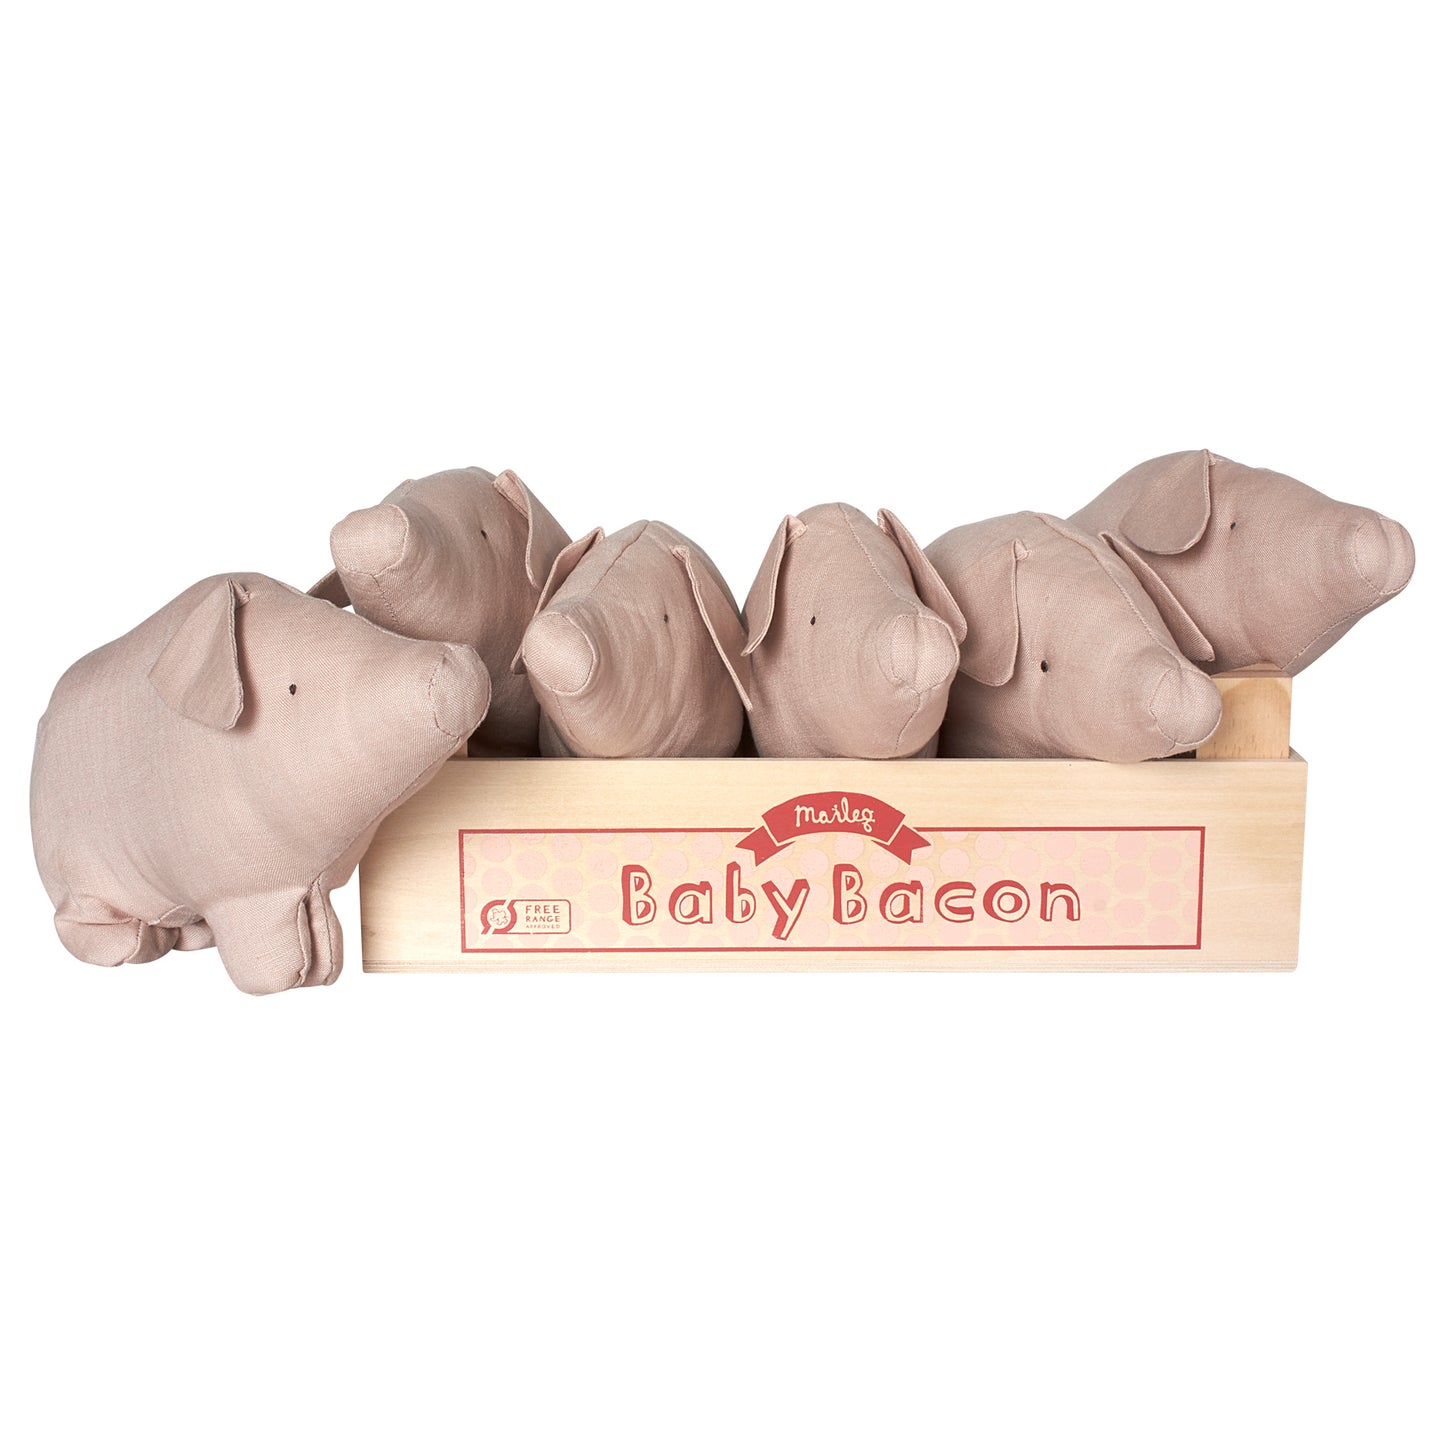 Baby Bacon Schweinchen